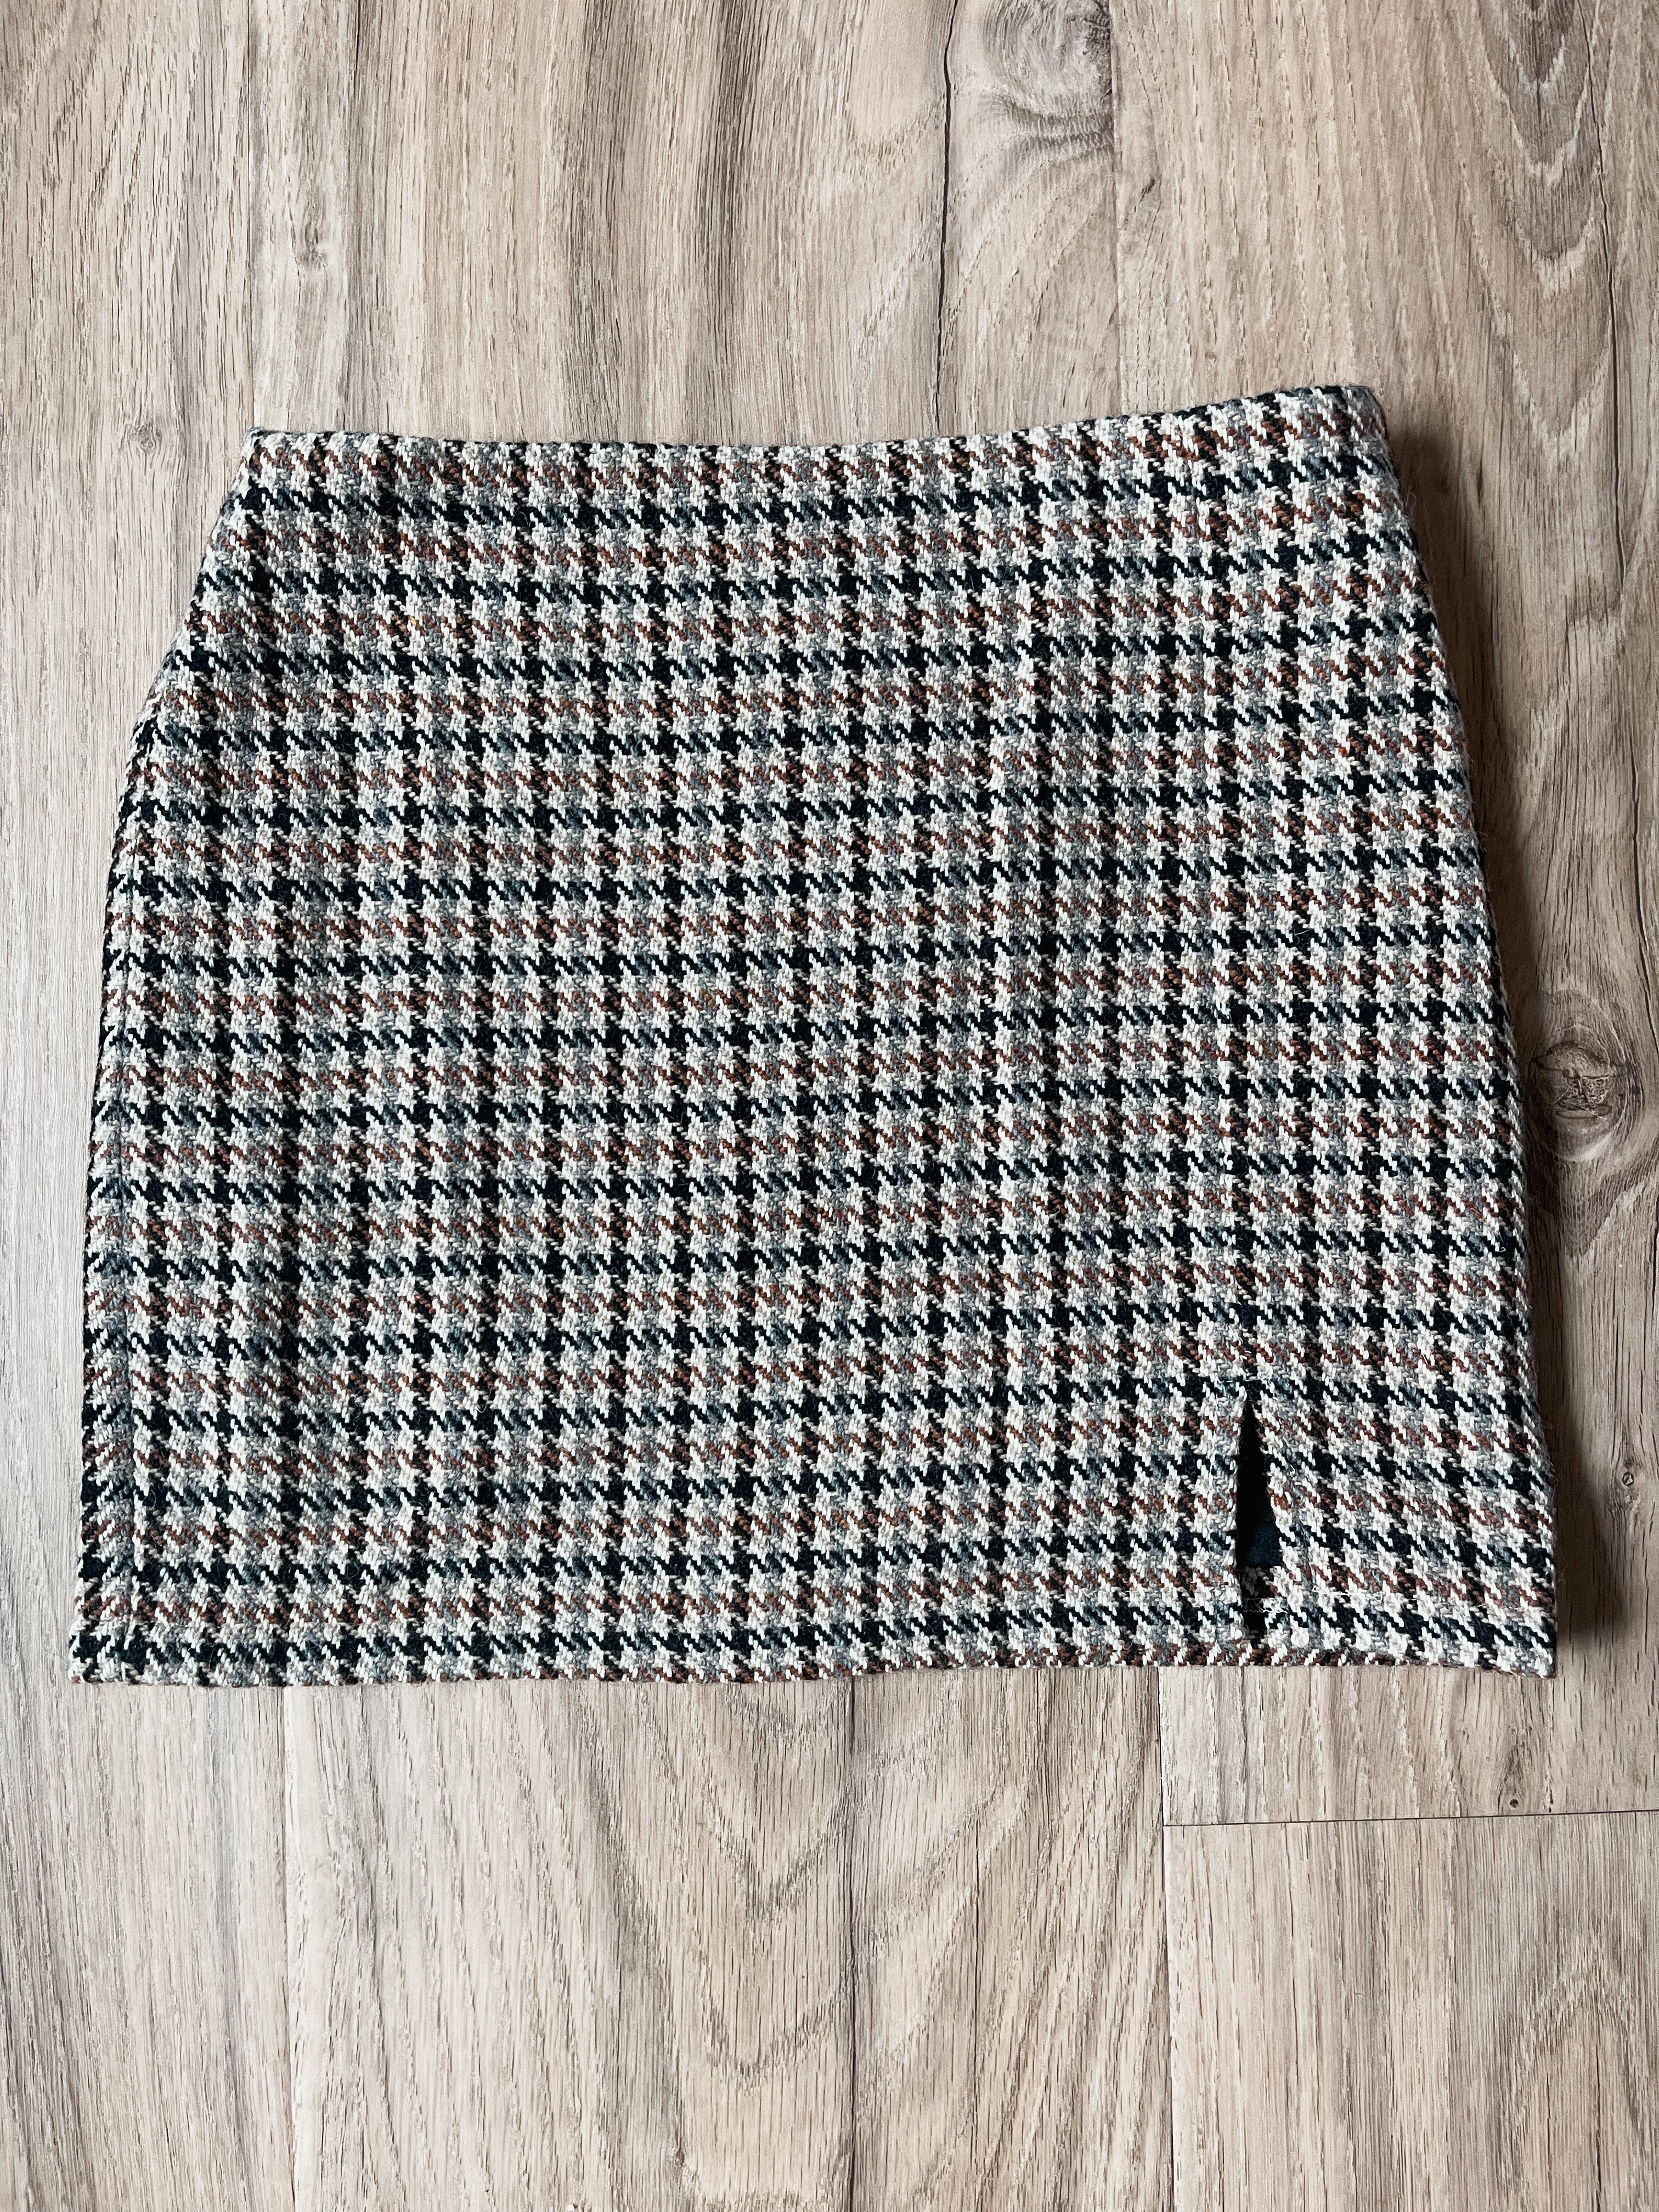 Celeste Mini Slit Skirt - Brown Multi